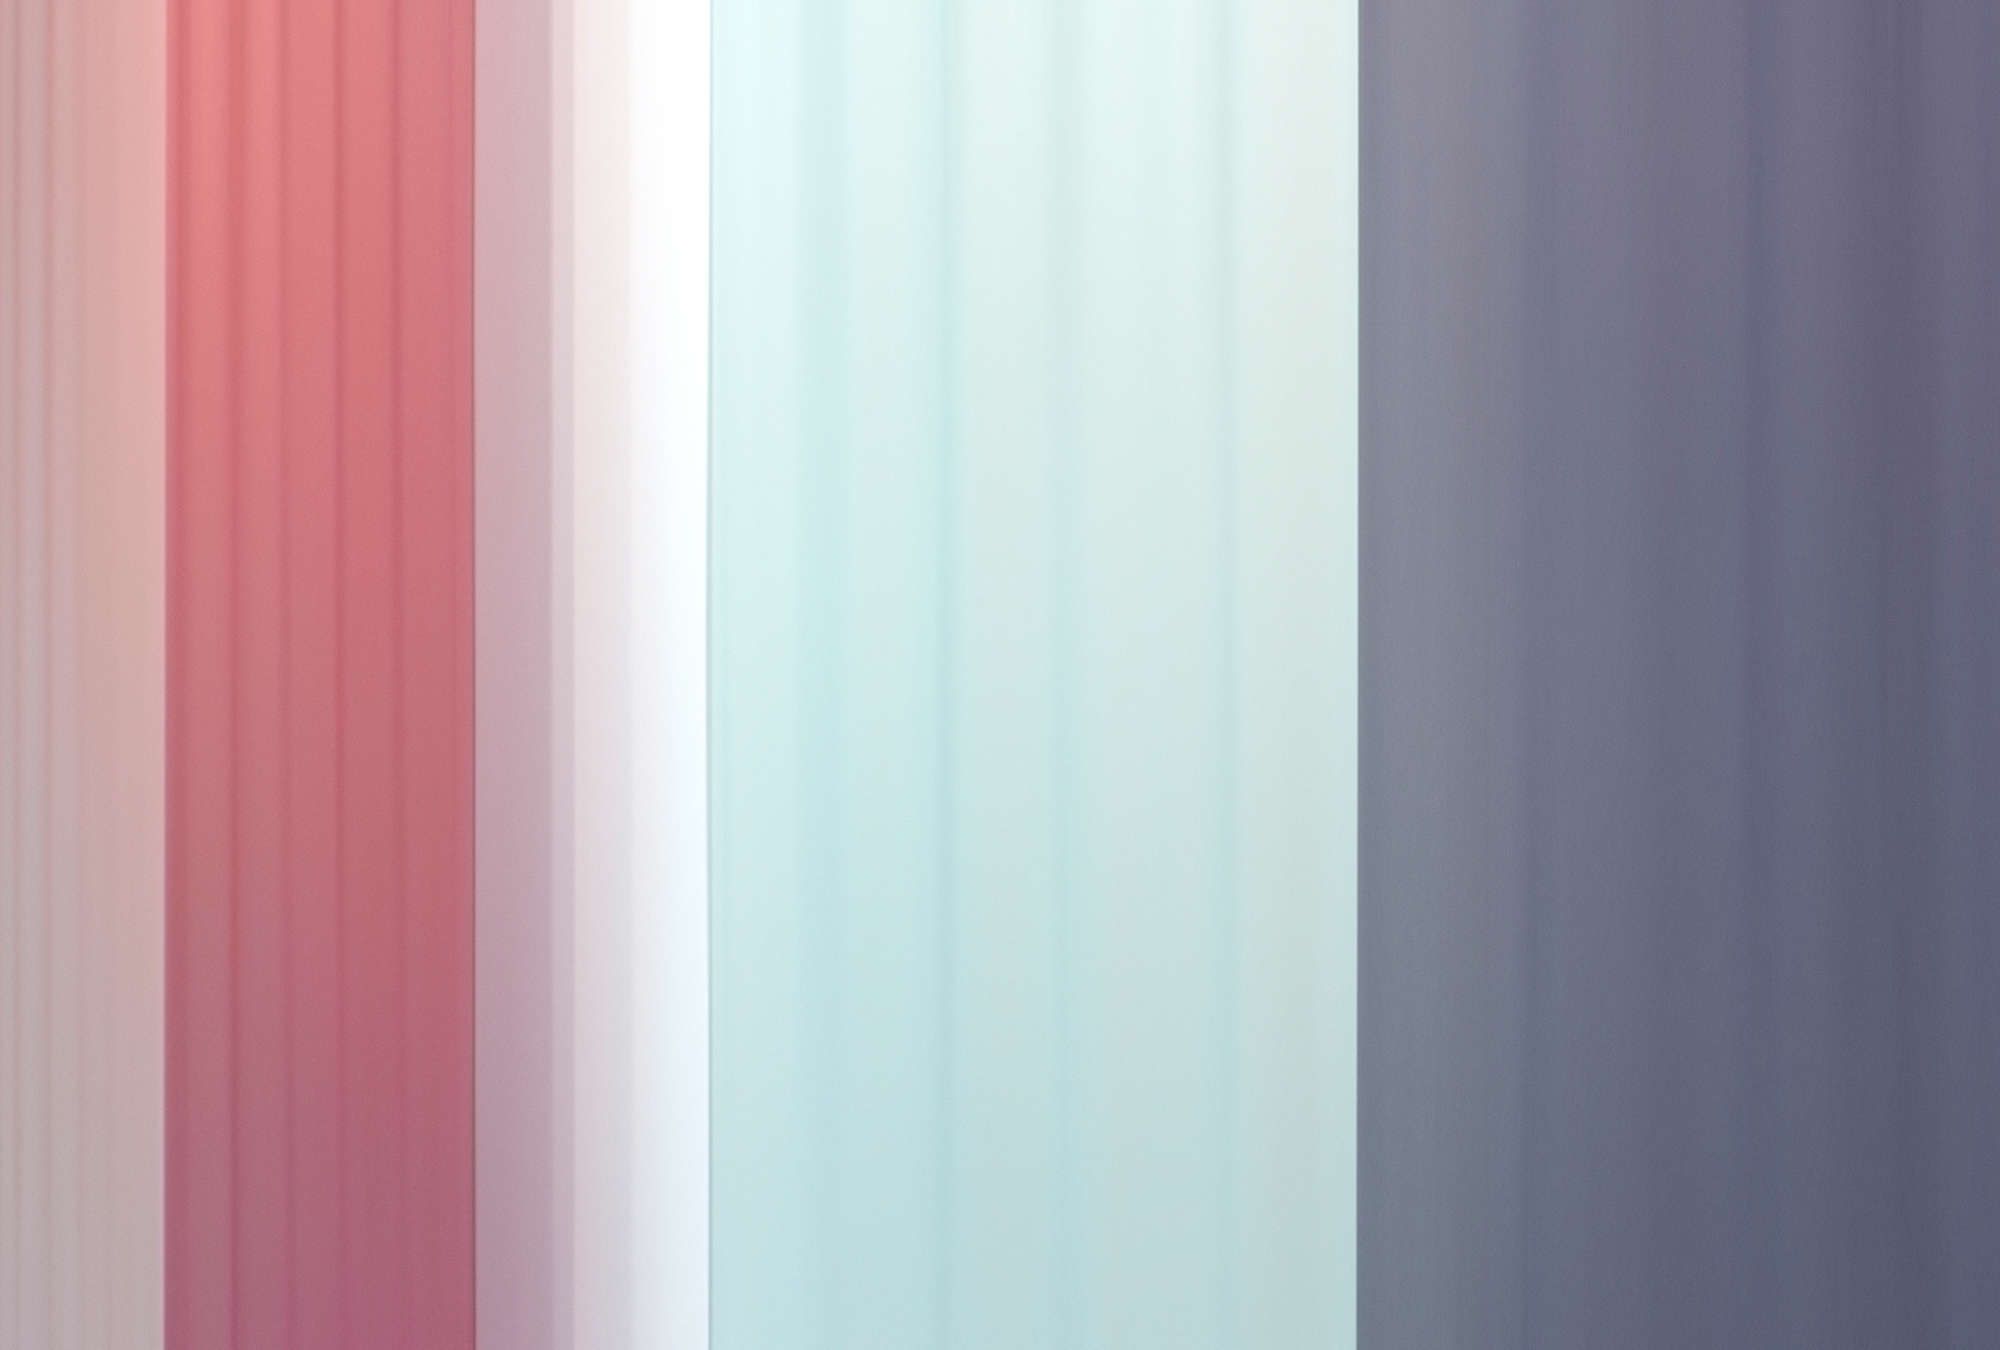             papier peint en papier »co-colores 2« - dégradé de couleurs à rayures - rose, bleu clair bleu foncé | intissé légèrement structuré
        